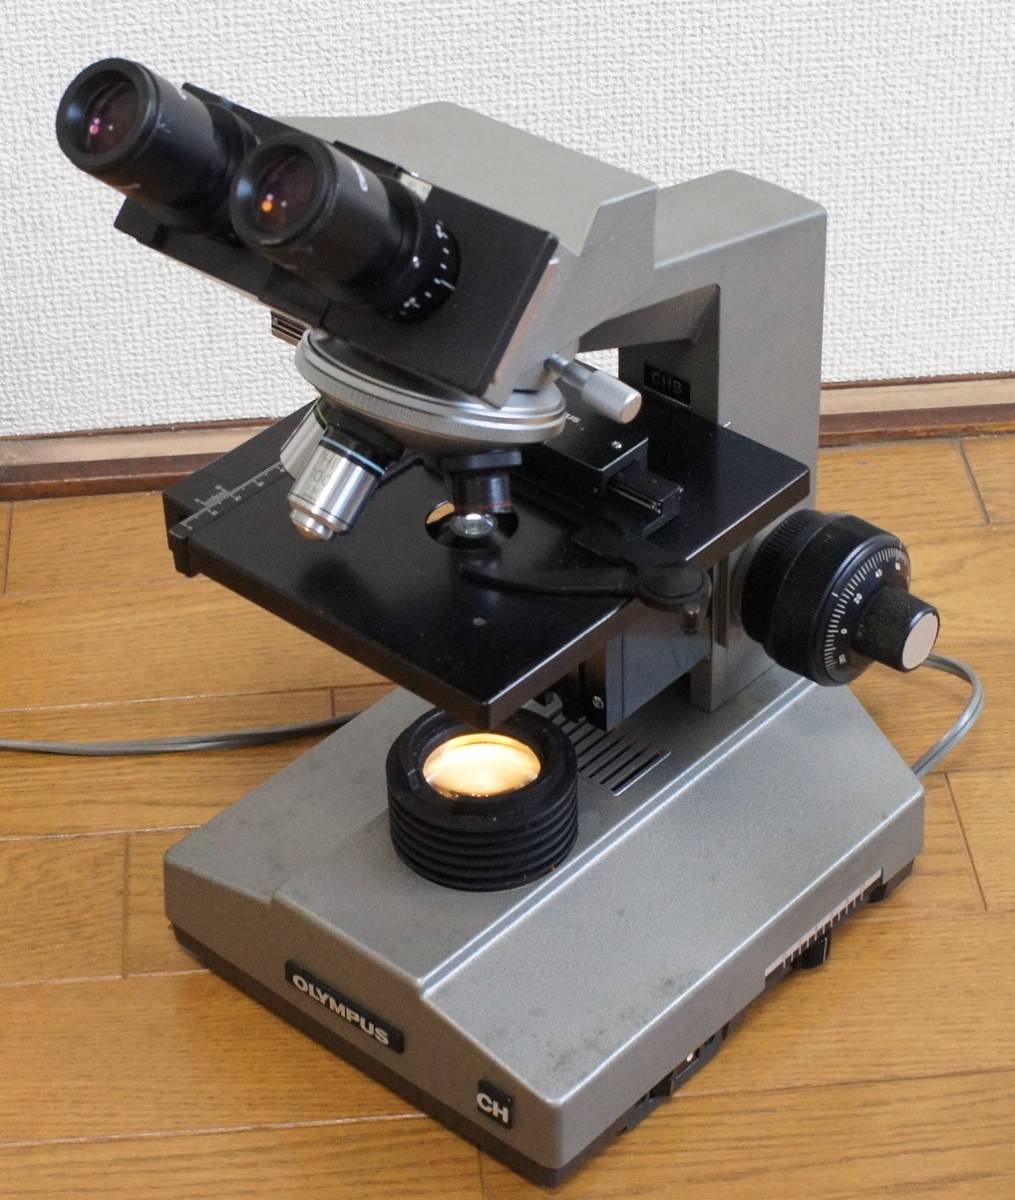 ❤プロ仕様 複合型立体顕微鏡❣研究者の様に本格的な観察を超簡単手軽に ❤